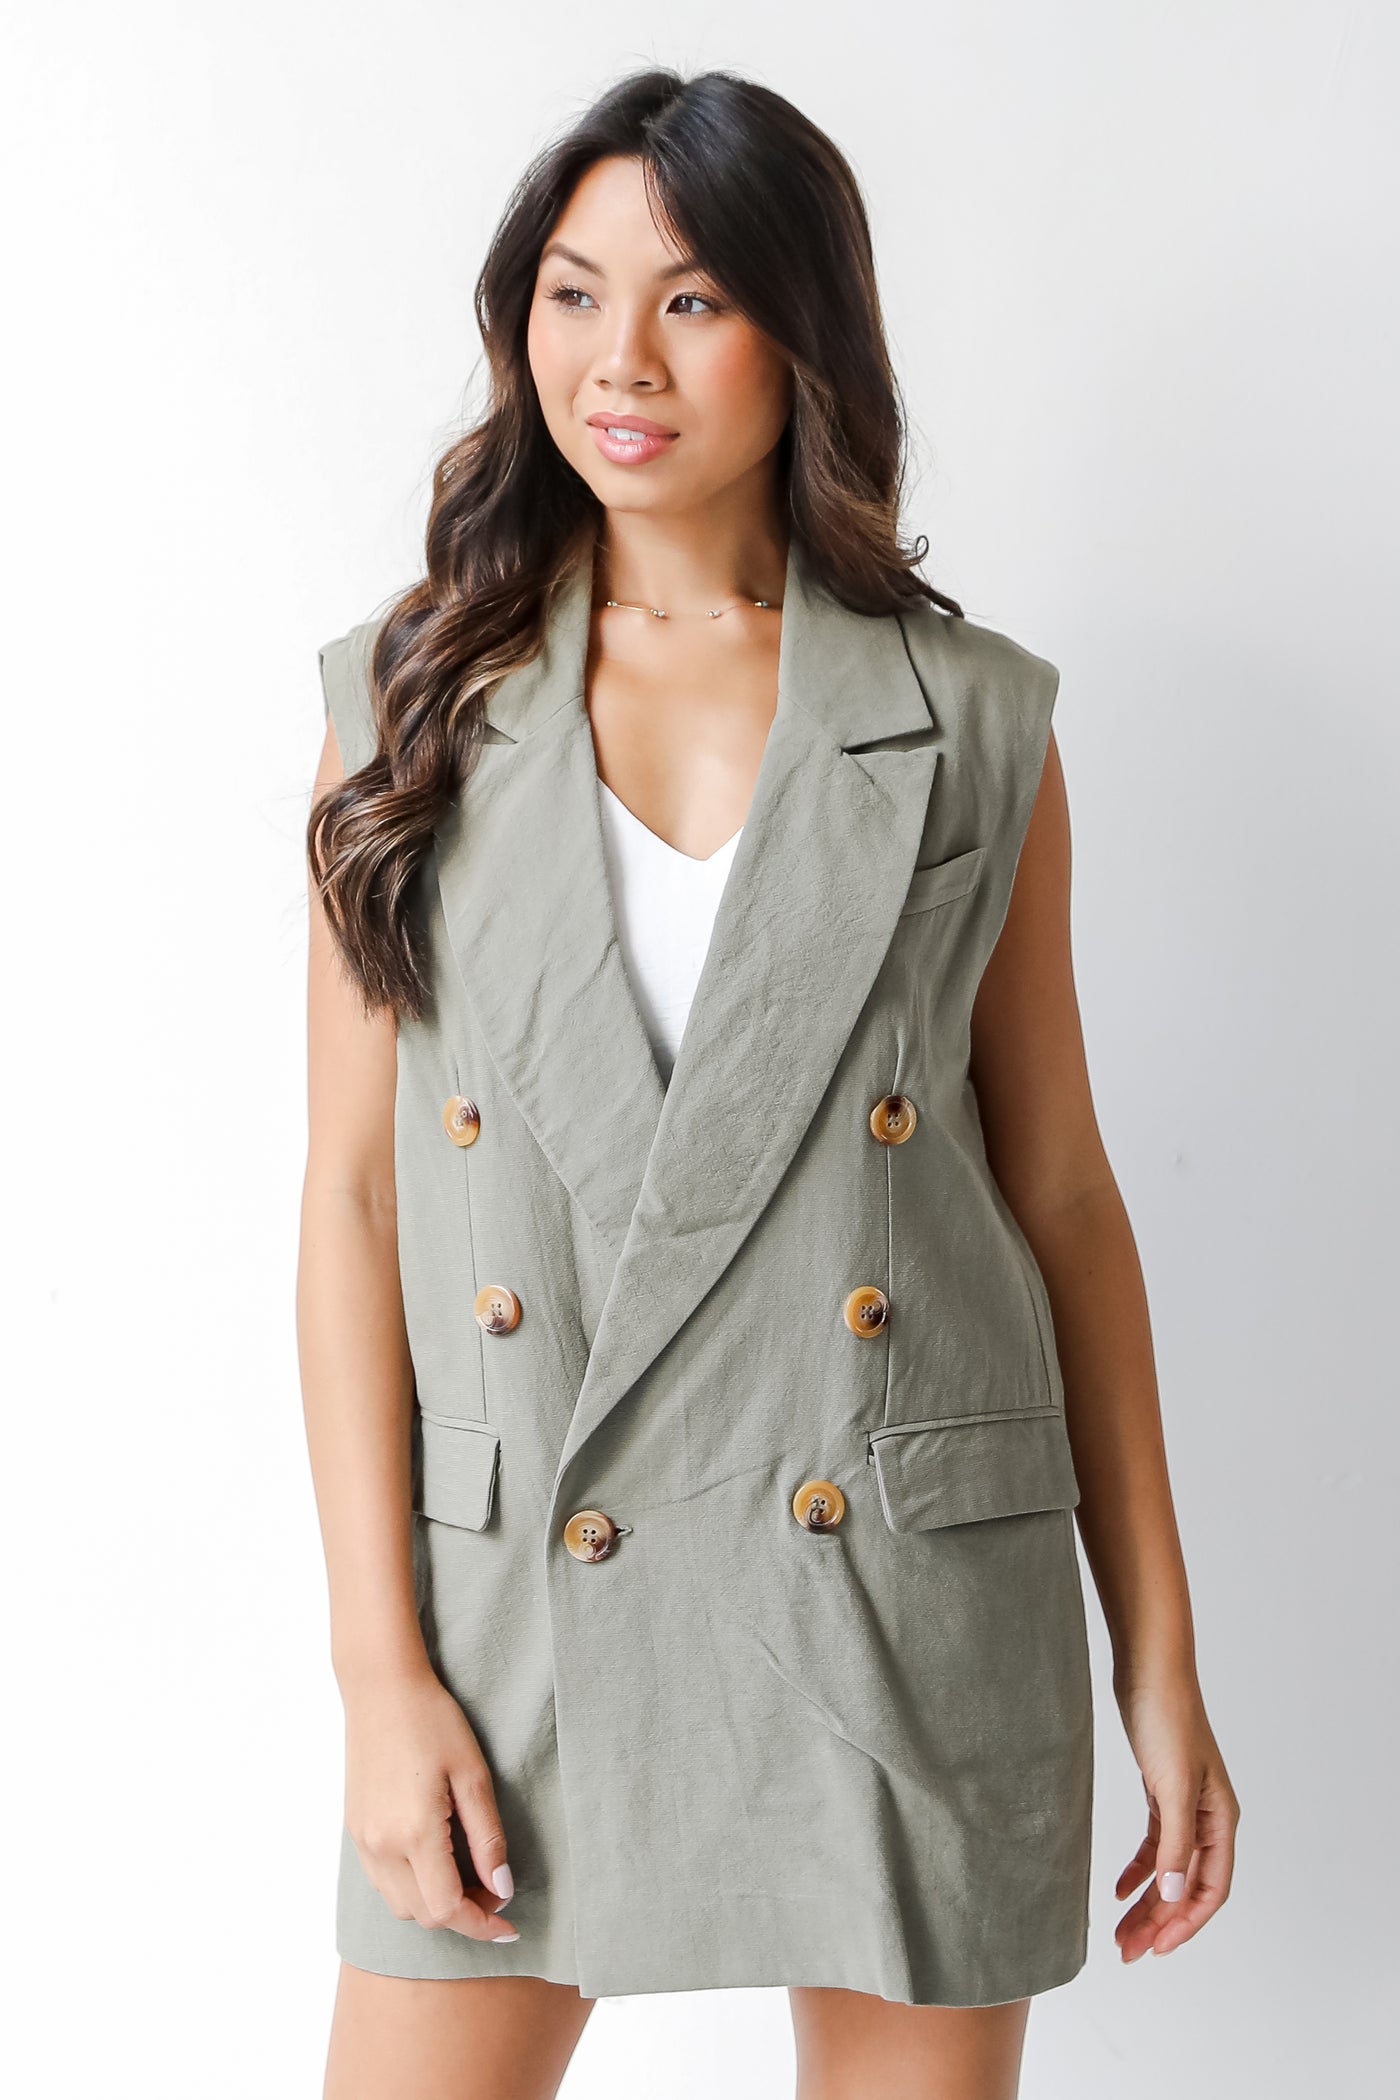 olive collared vest on model